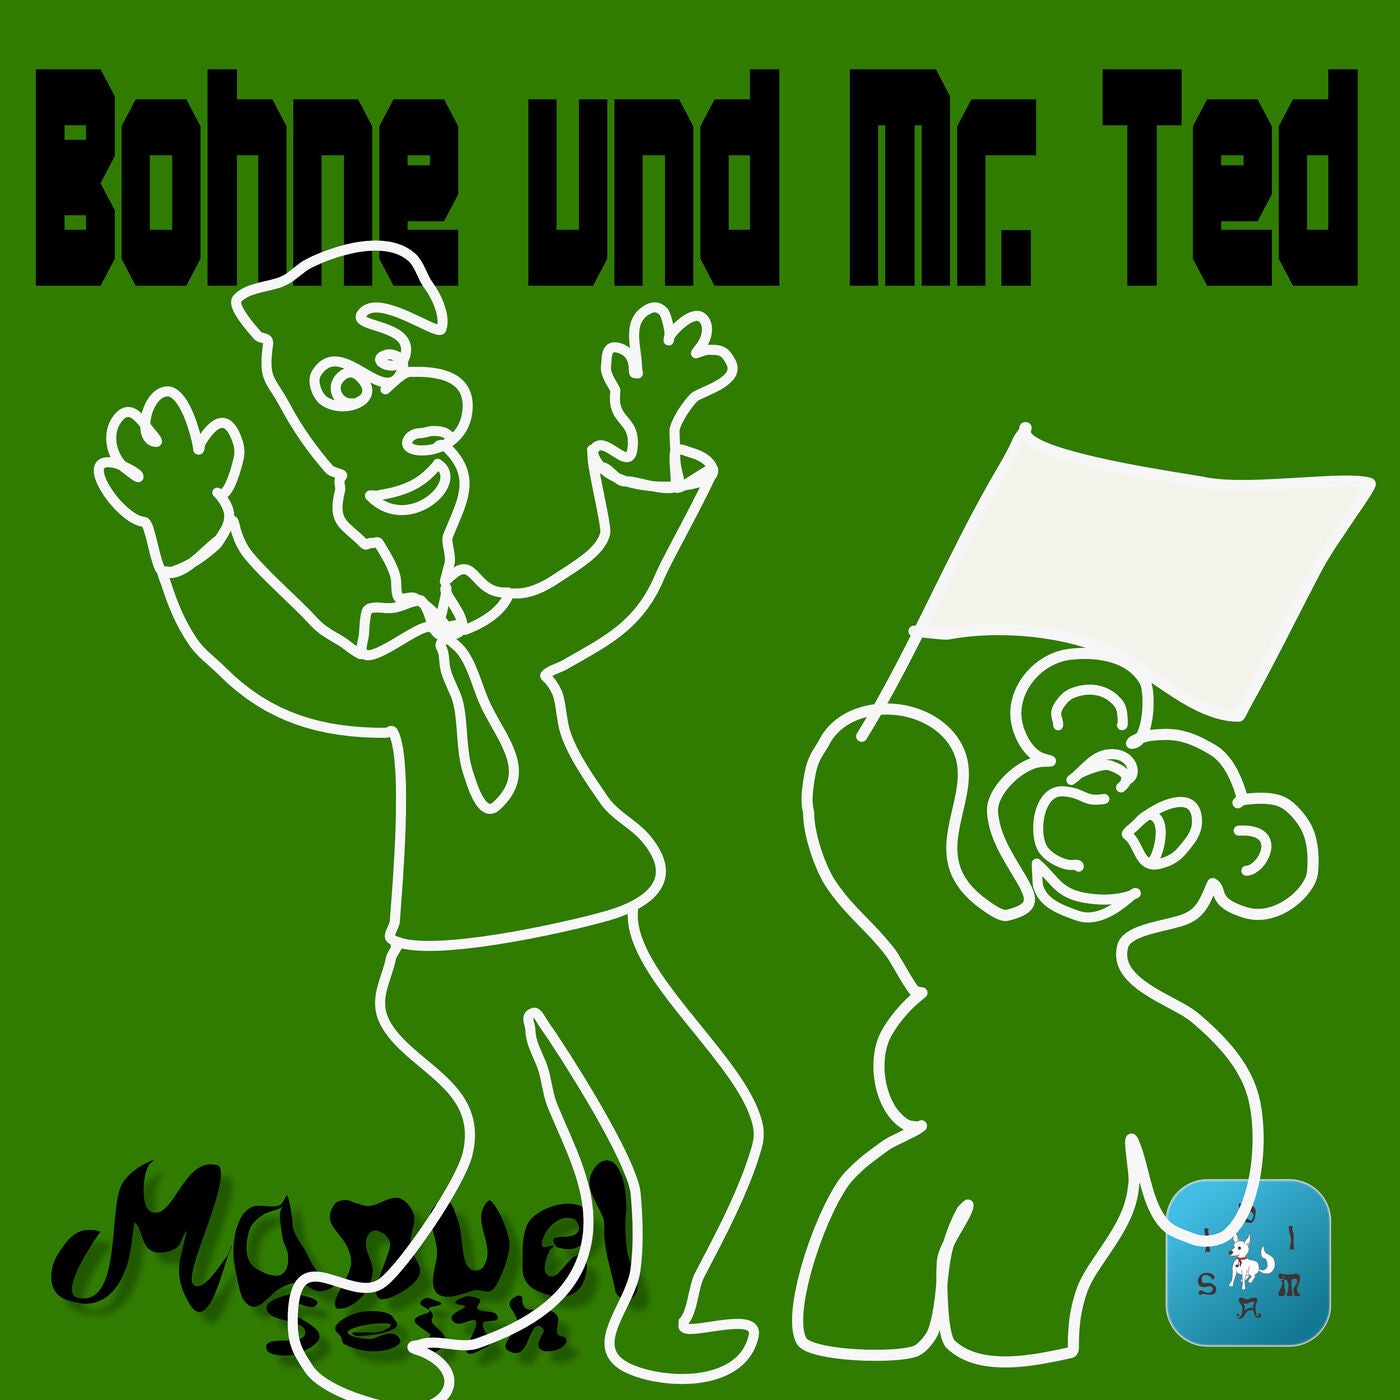 Bohne und Mr. Ted